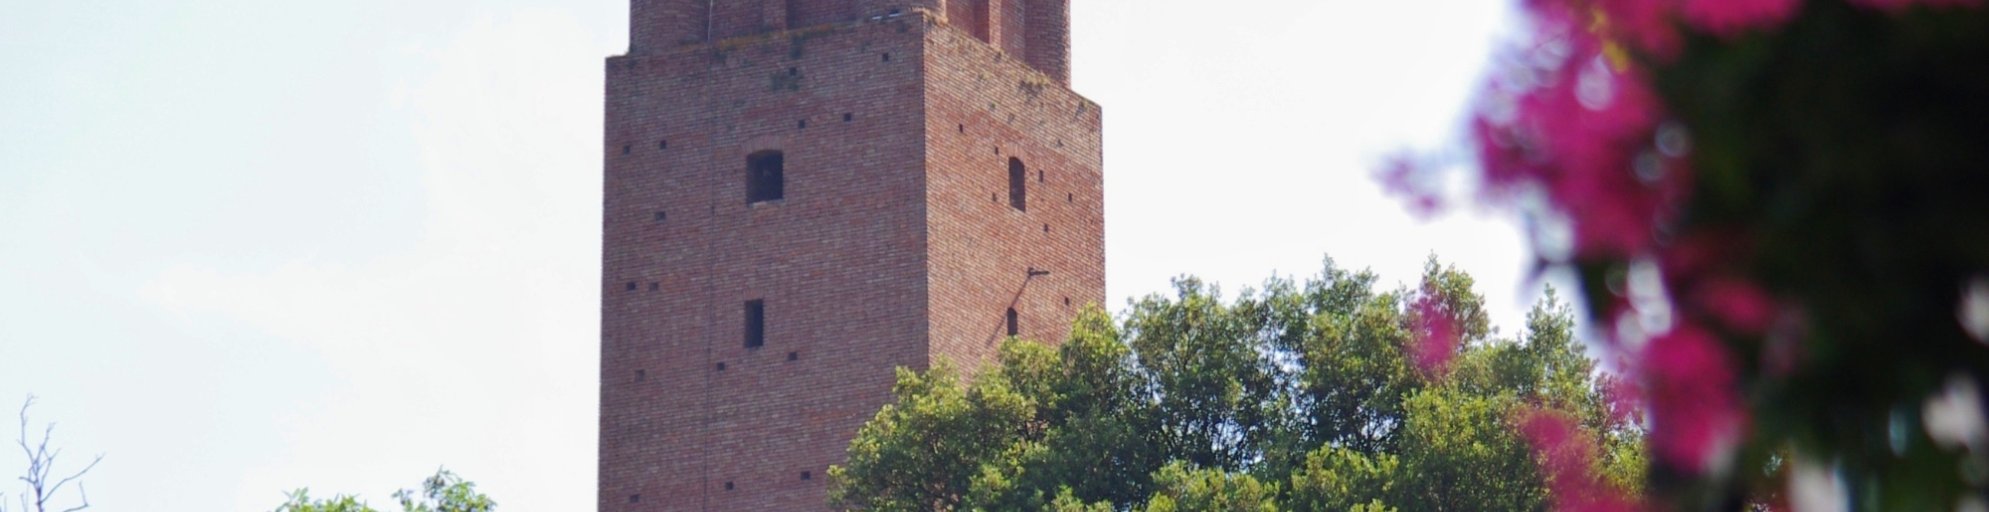 Federico II Tower in San Miniato